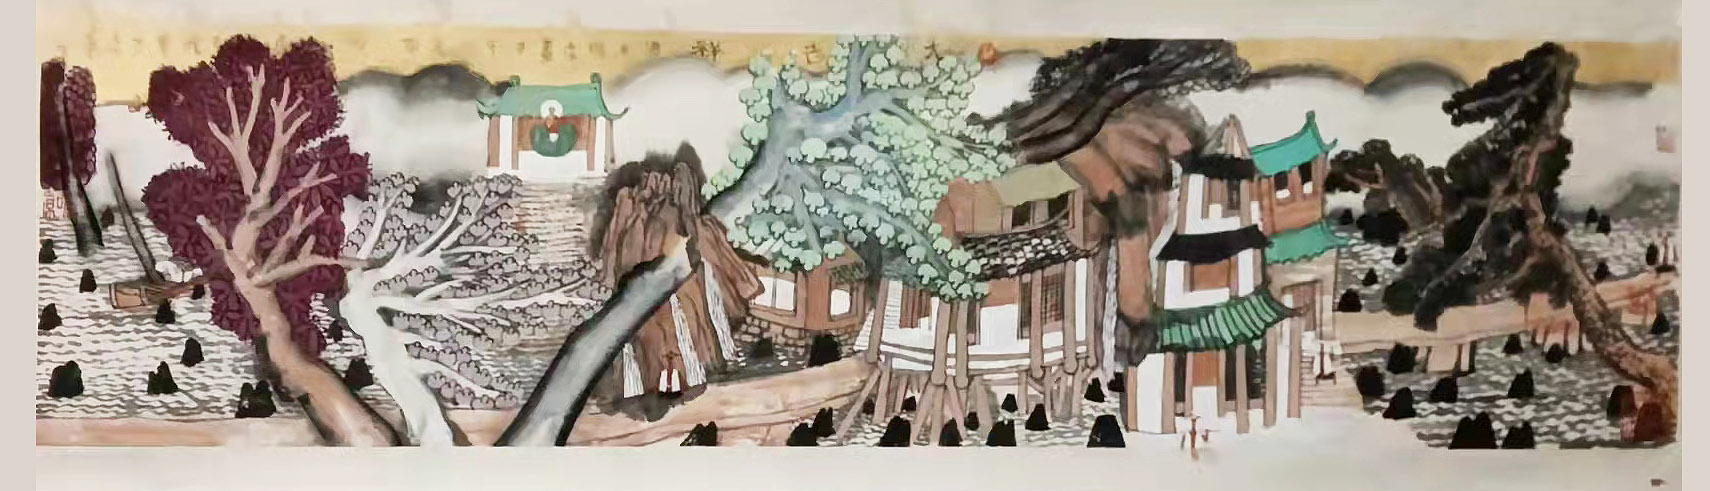 姚鸣京风景1752